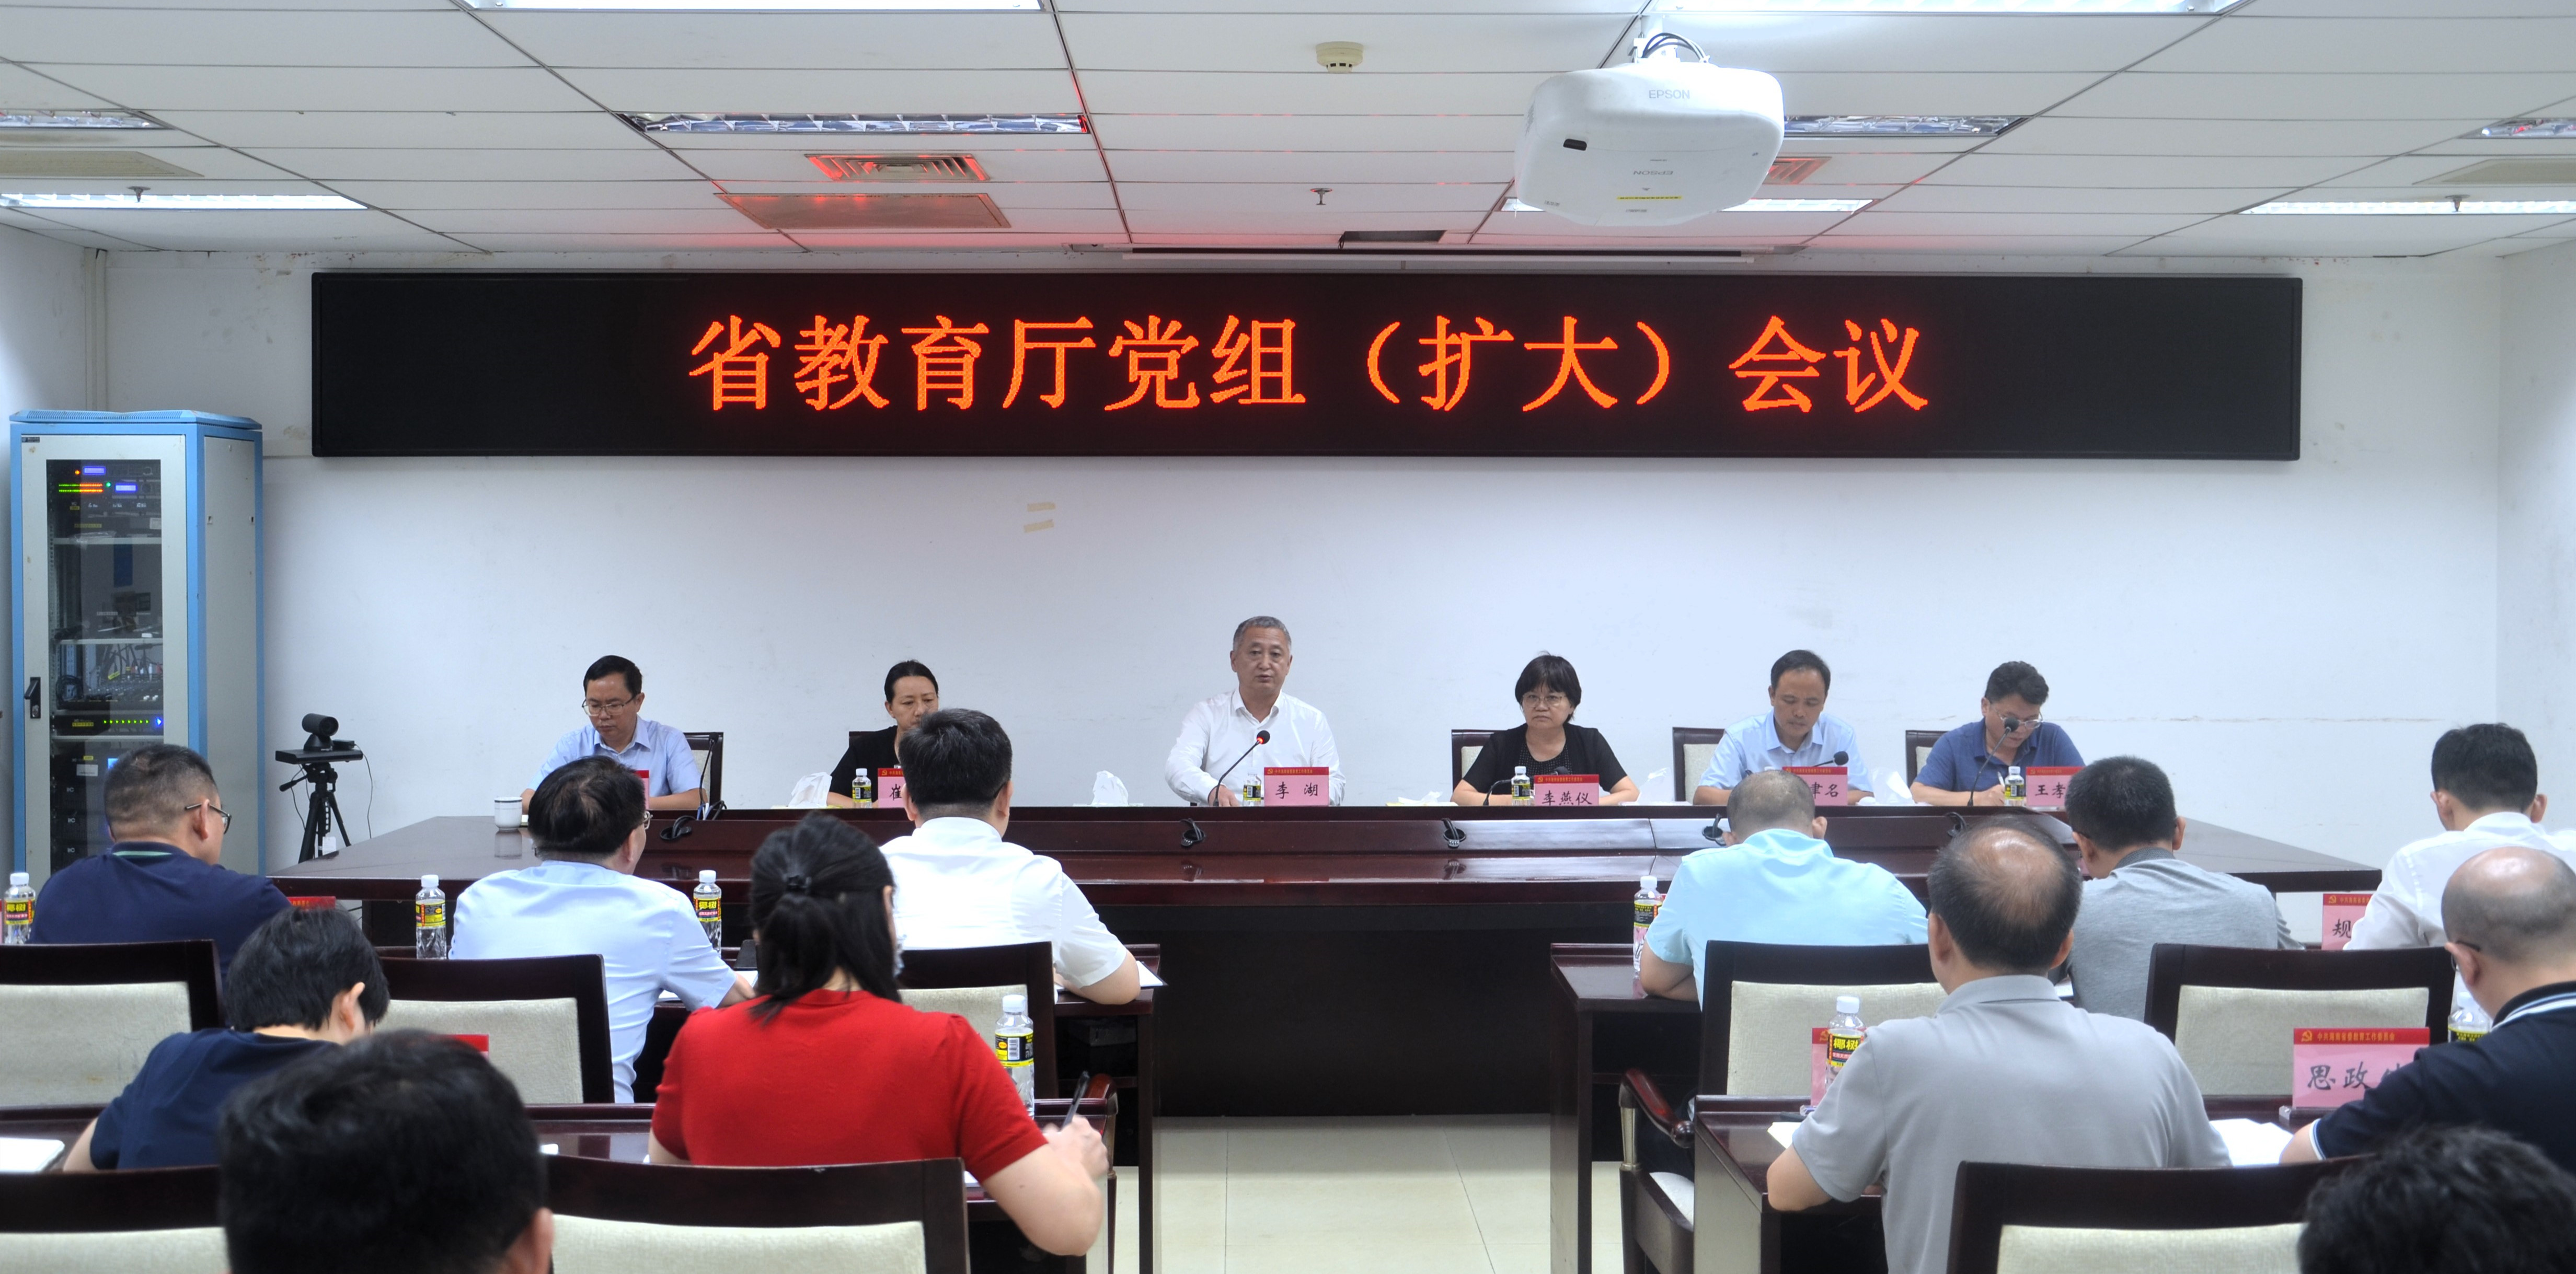 海南省教育厅党组召开扩大会议 传达学习贯彻党的二十届三中全会精神